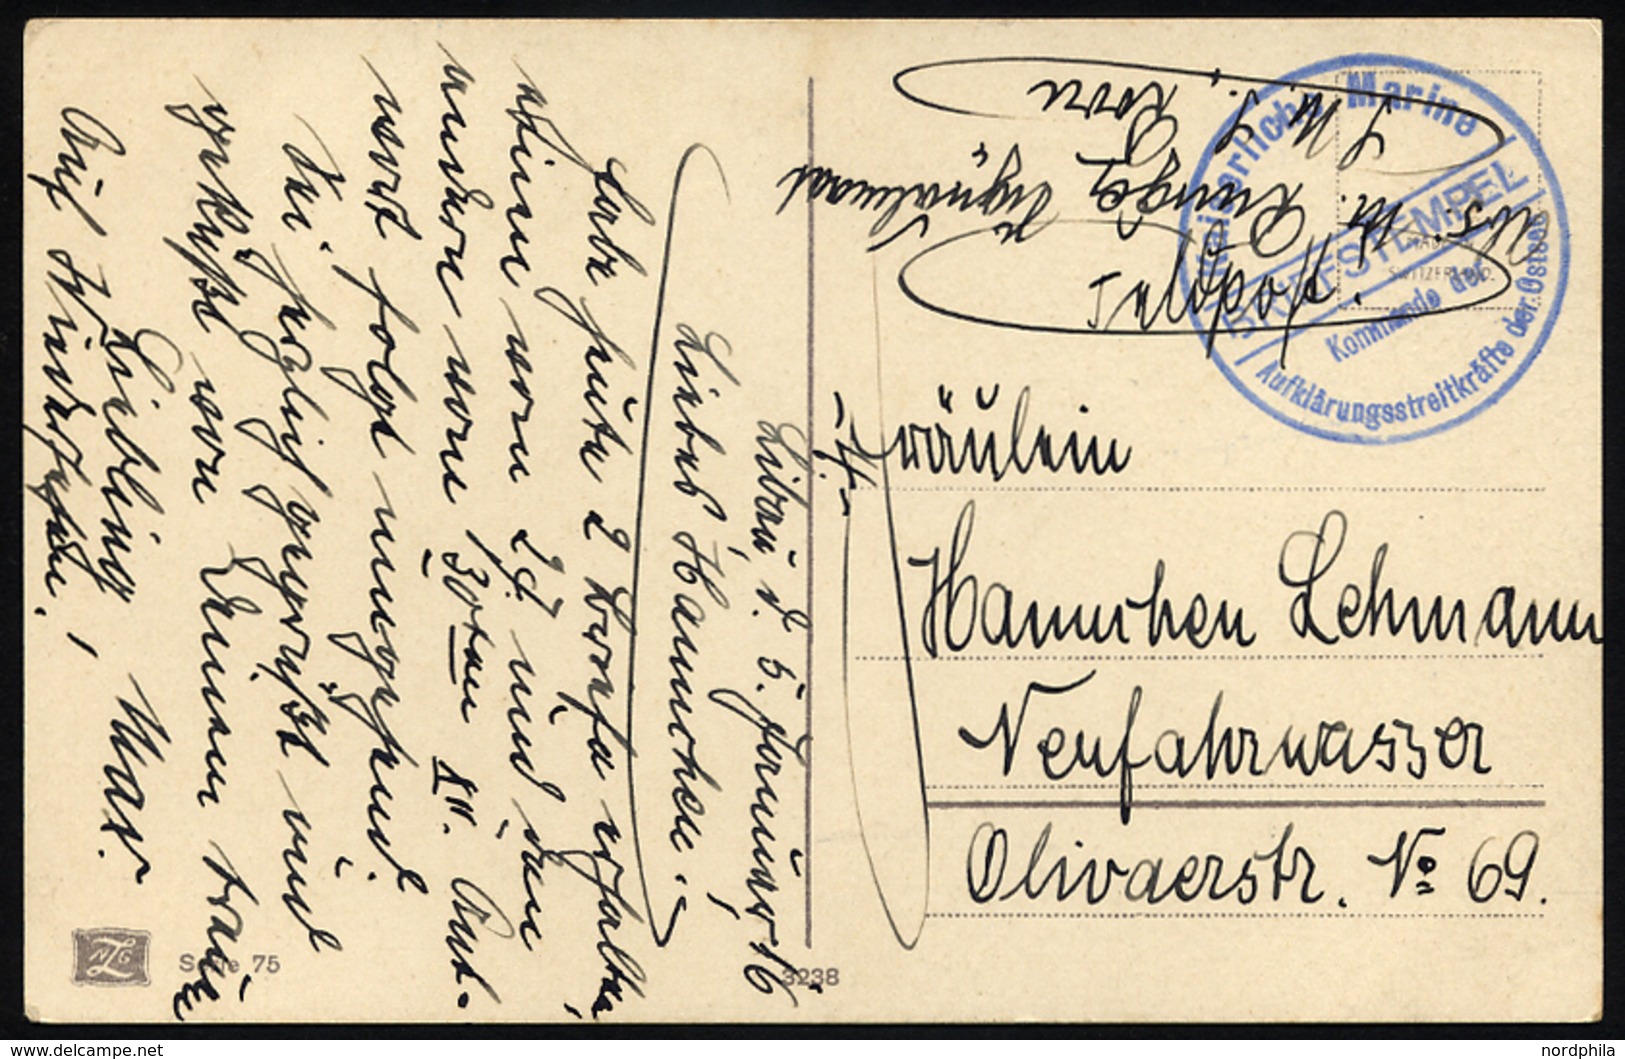 MSP VON 1914 - 1918 (Großer Kreuzer ROON), 5.1.1916, Blauer Briefstempel, Feldpost-Ansichtskarte Von Bord Der Roon, Prac - Deutsche Post In Der Türkei